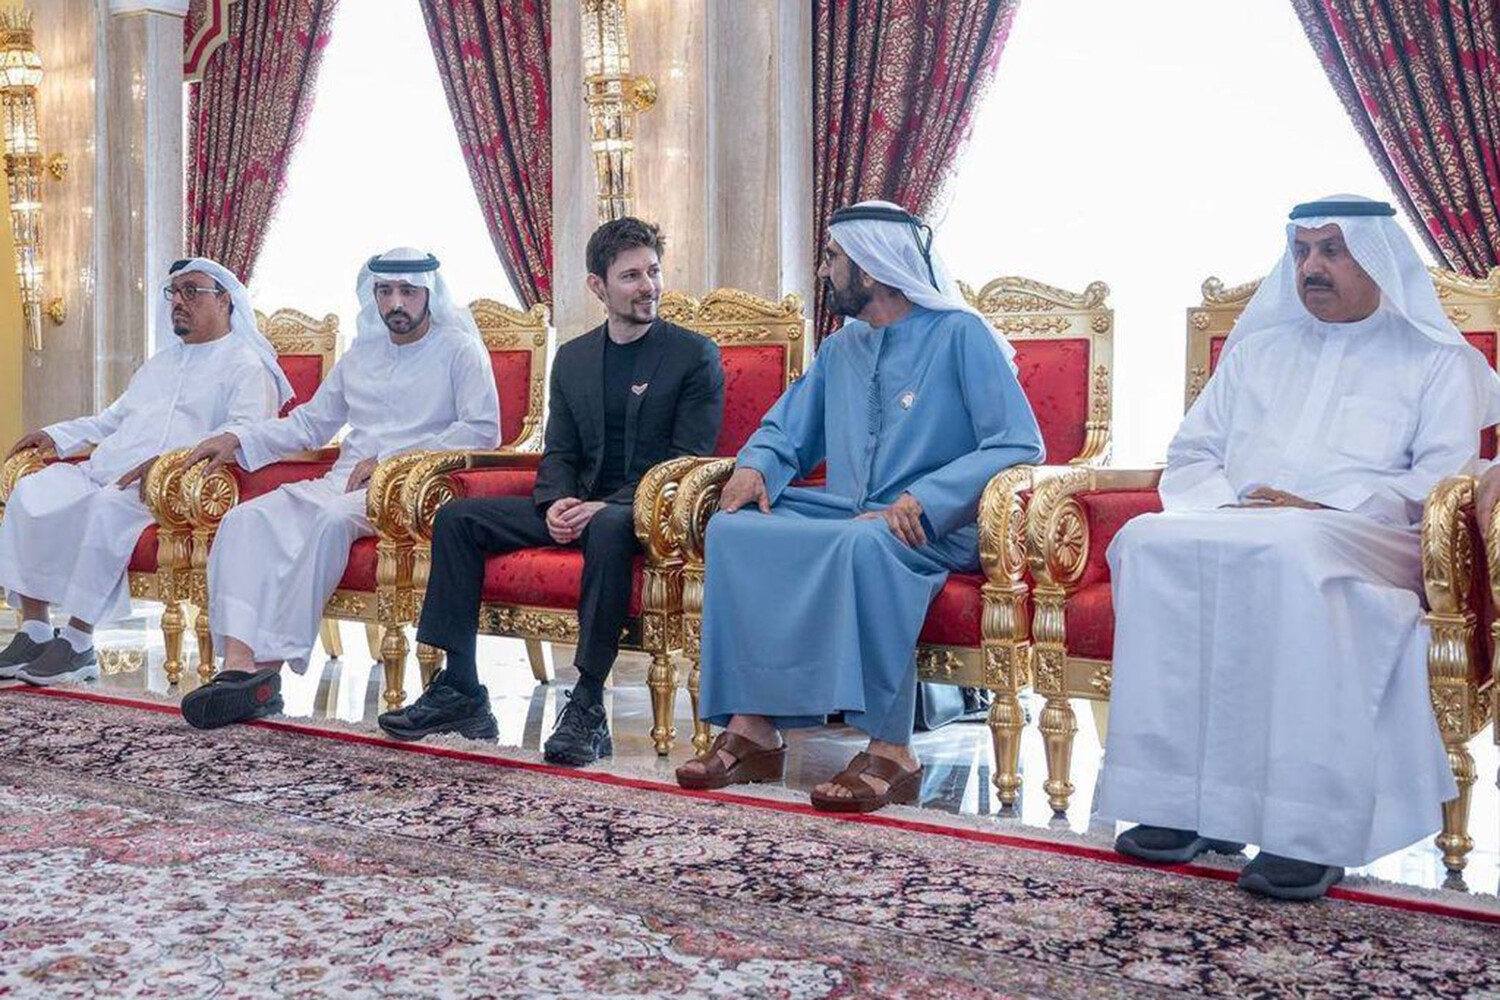 Павел Дуров пришел на встречу с премьер-министром ОАЭ в кроссовках за 17 тысяч рублей